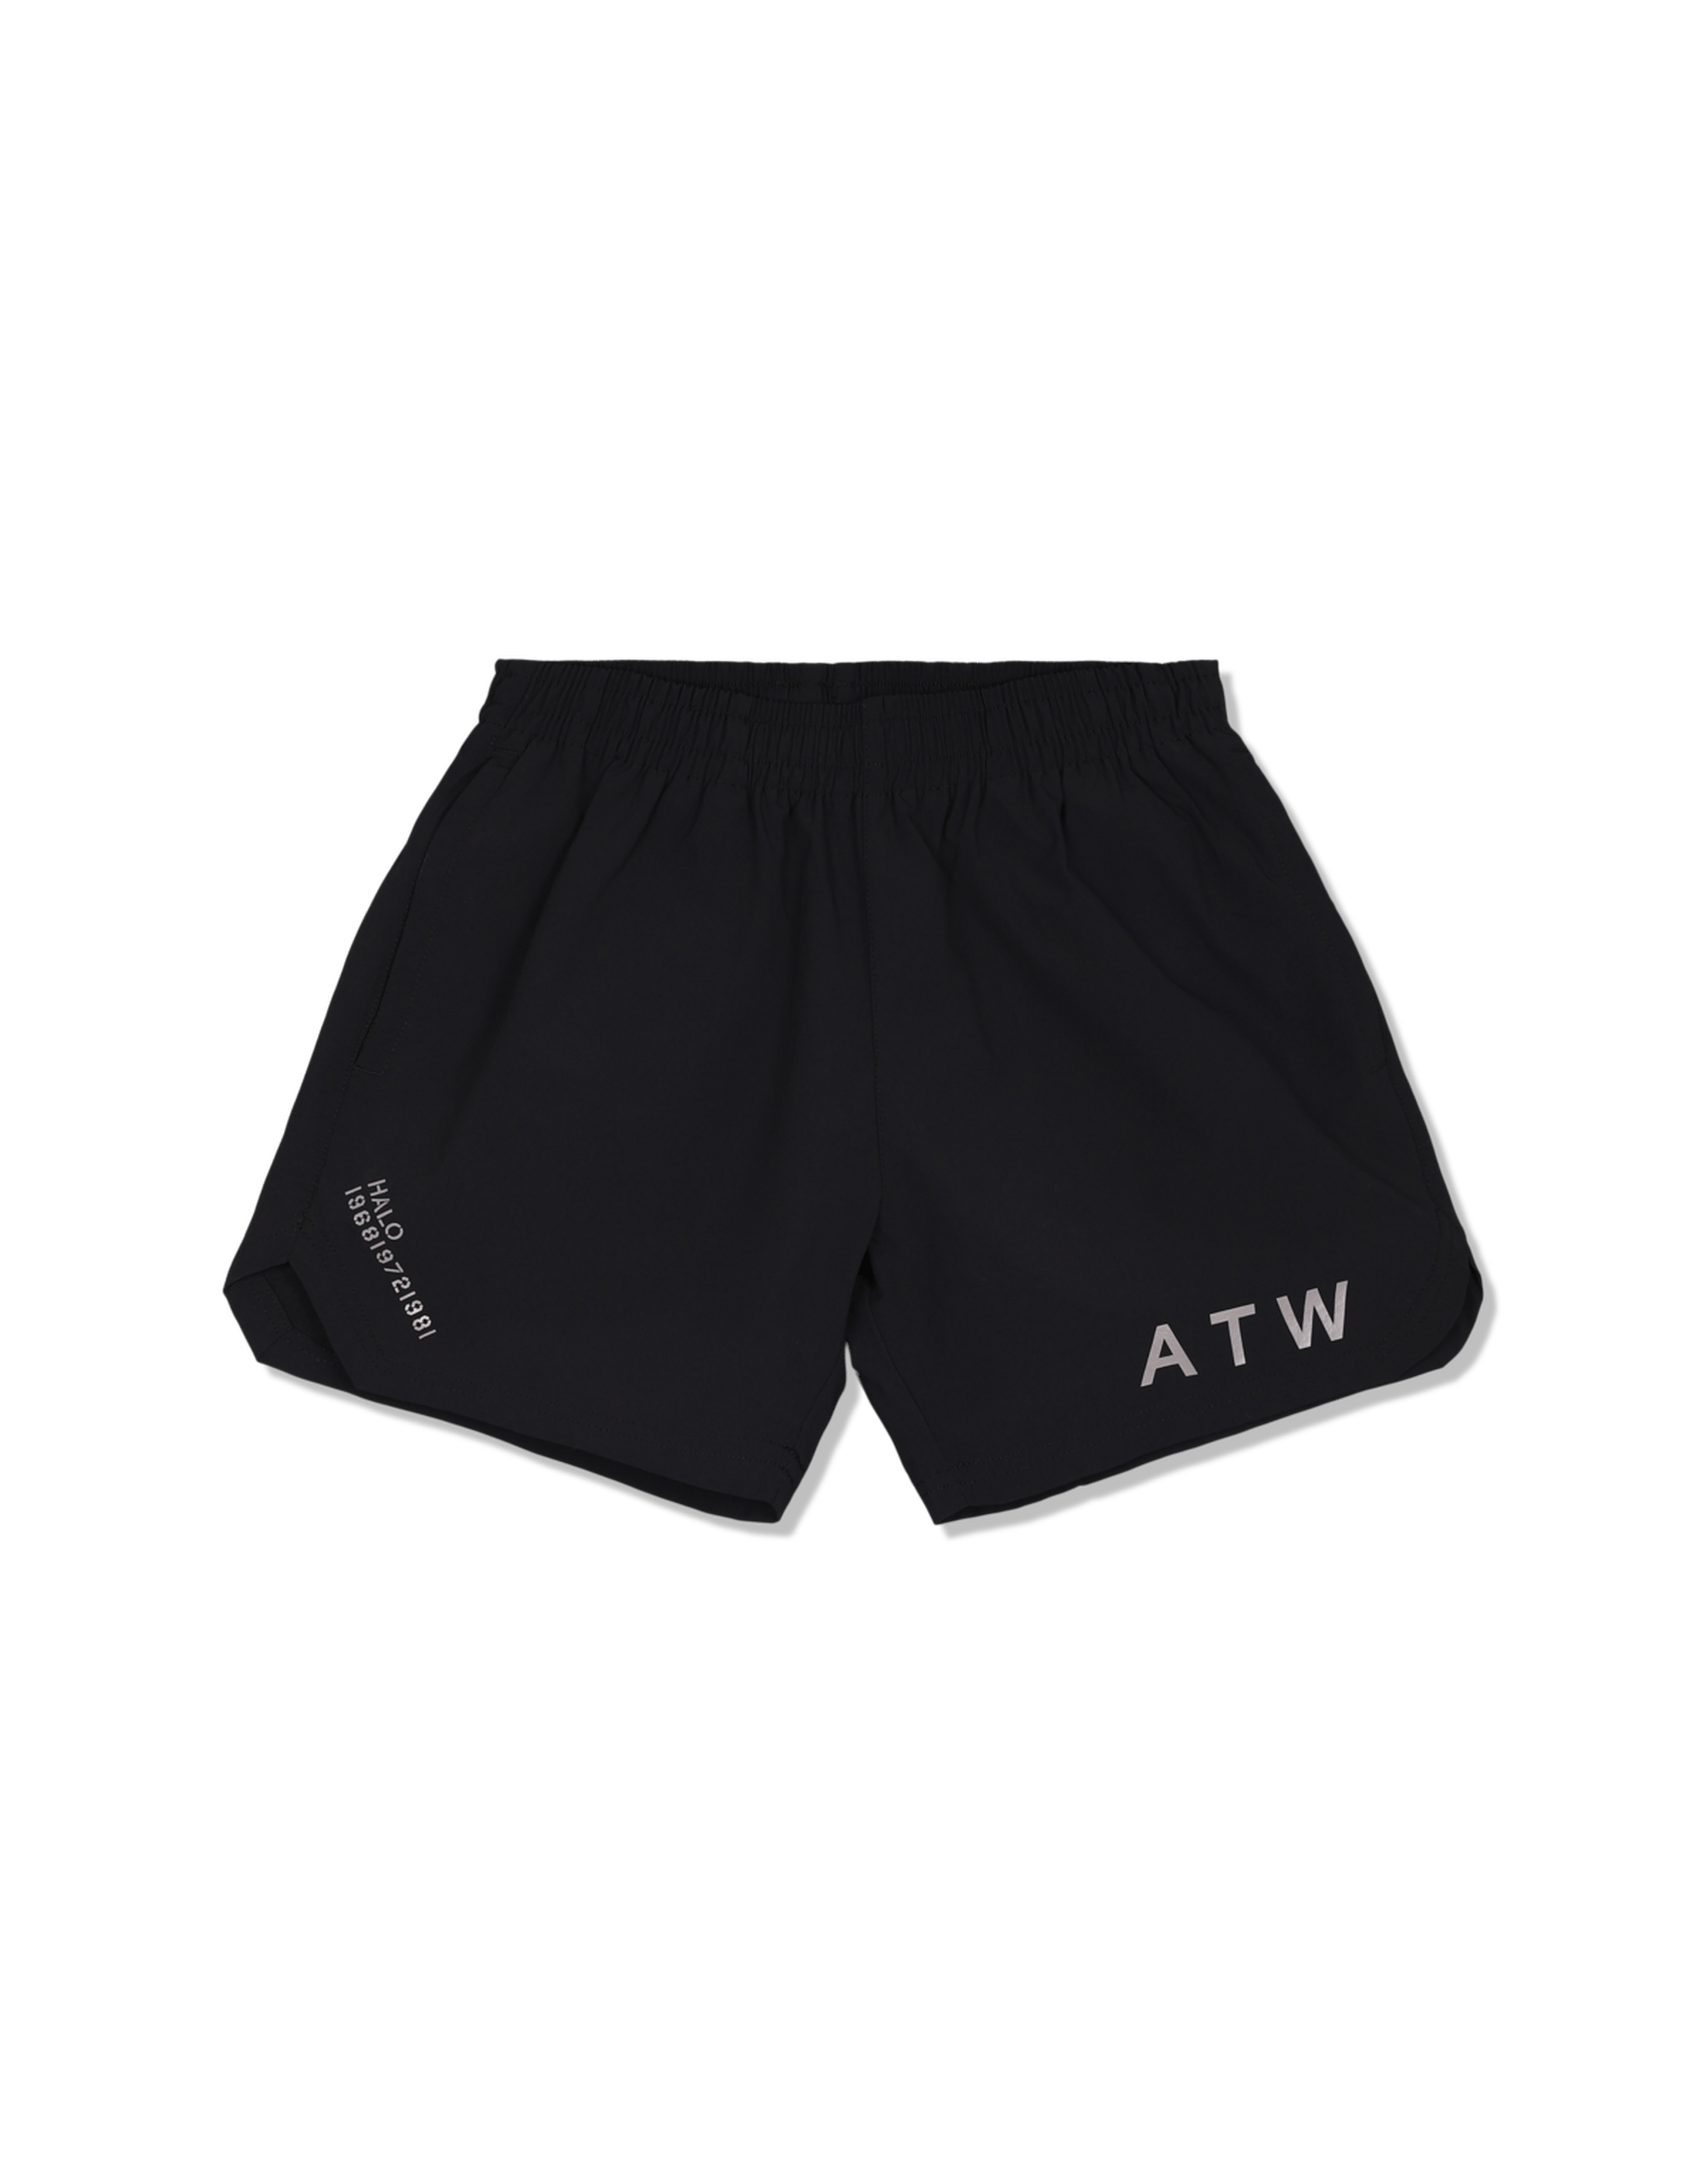 ATW Shorts